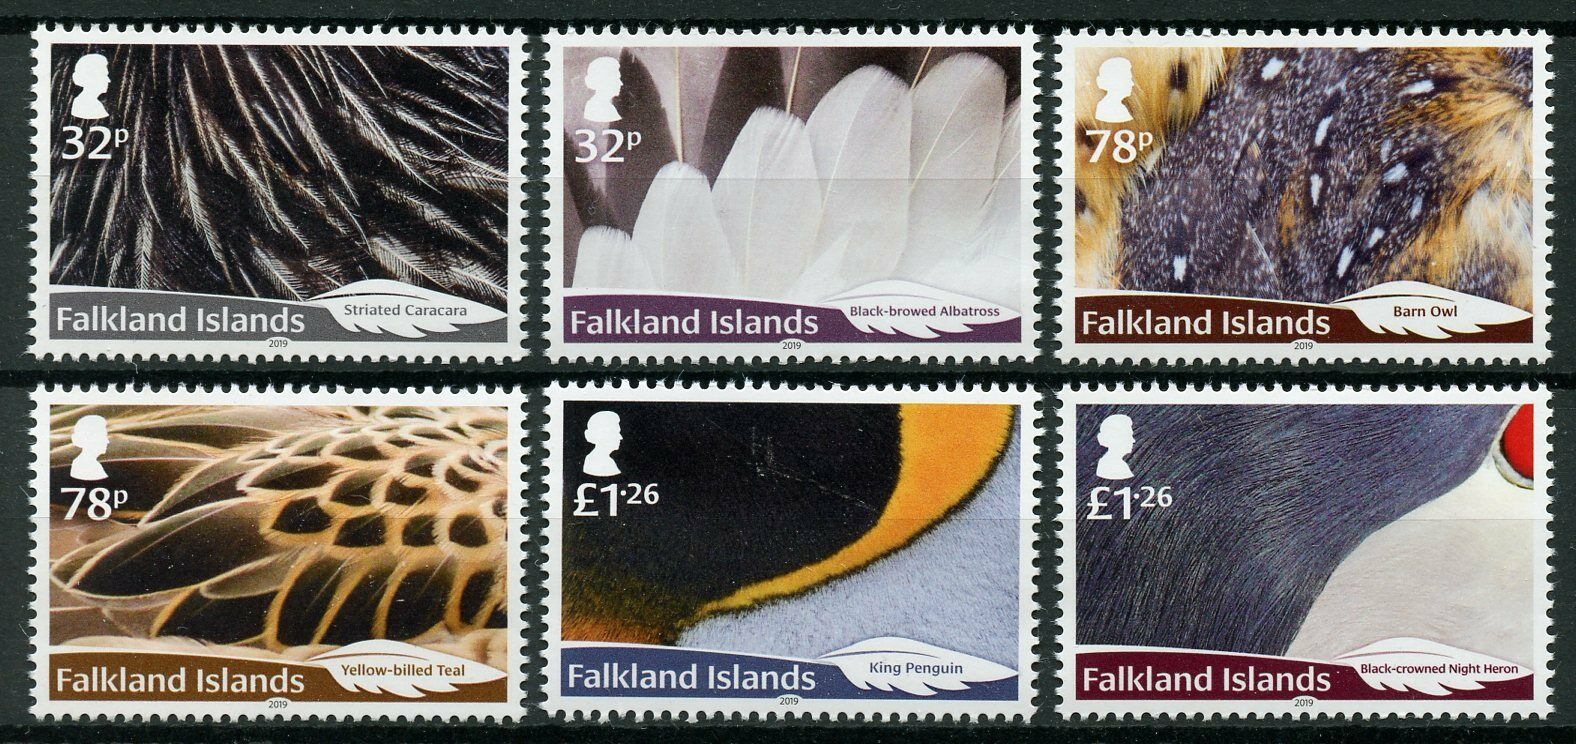 Falkland Islands 2019 MNH Birds on Stamps Feathers Ducks Owls Penguins 6v Set